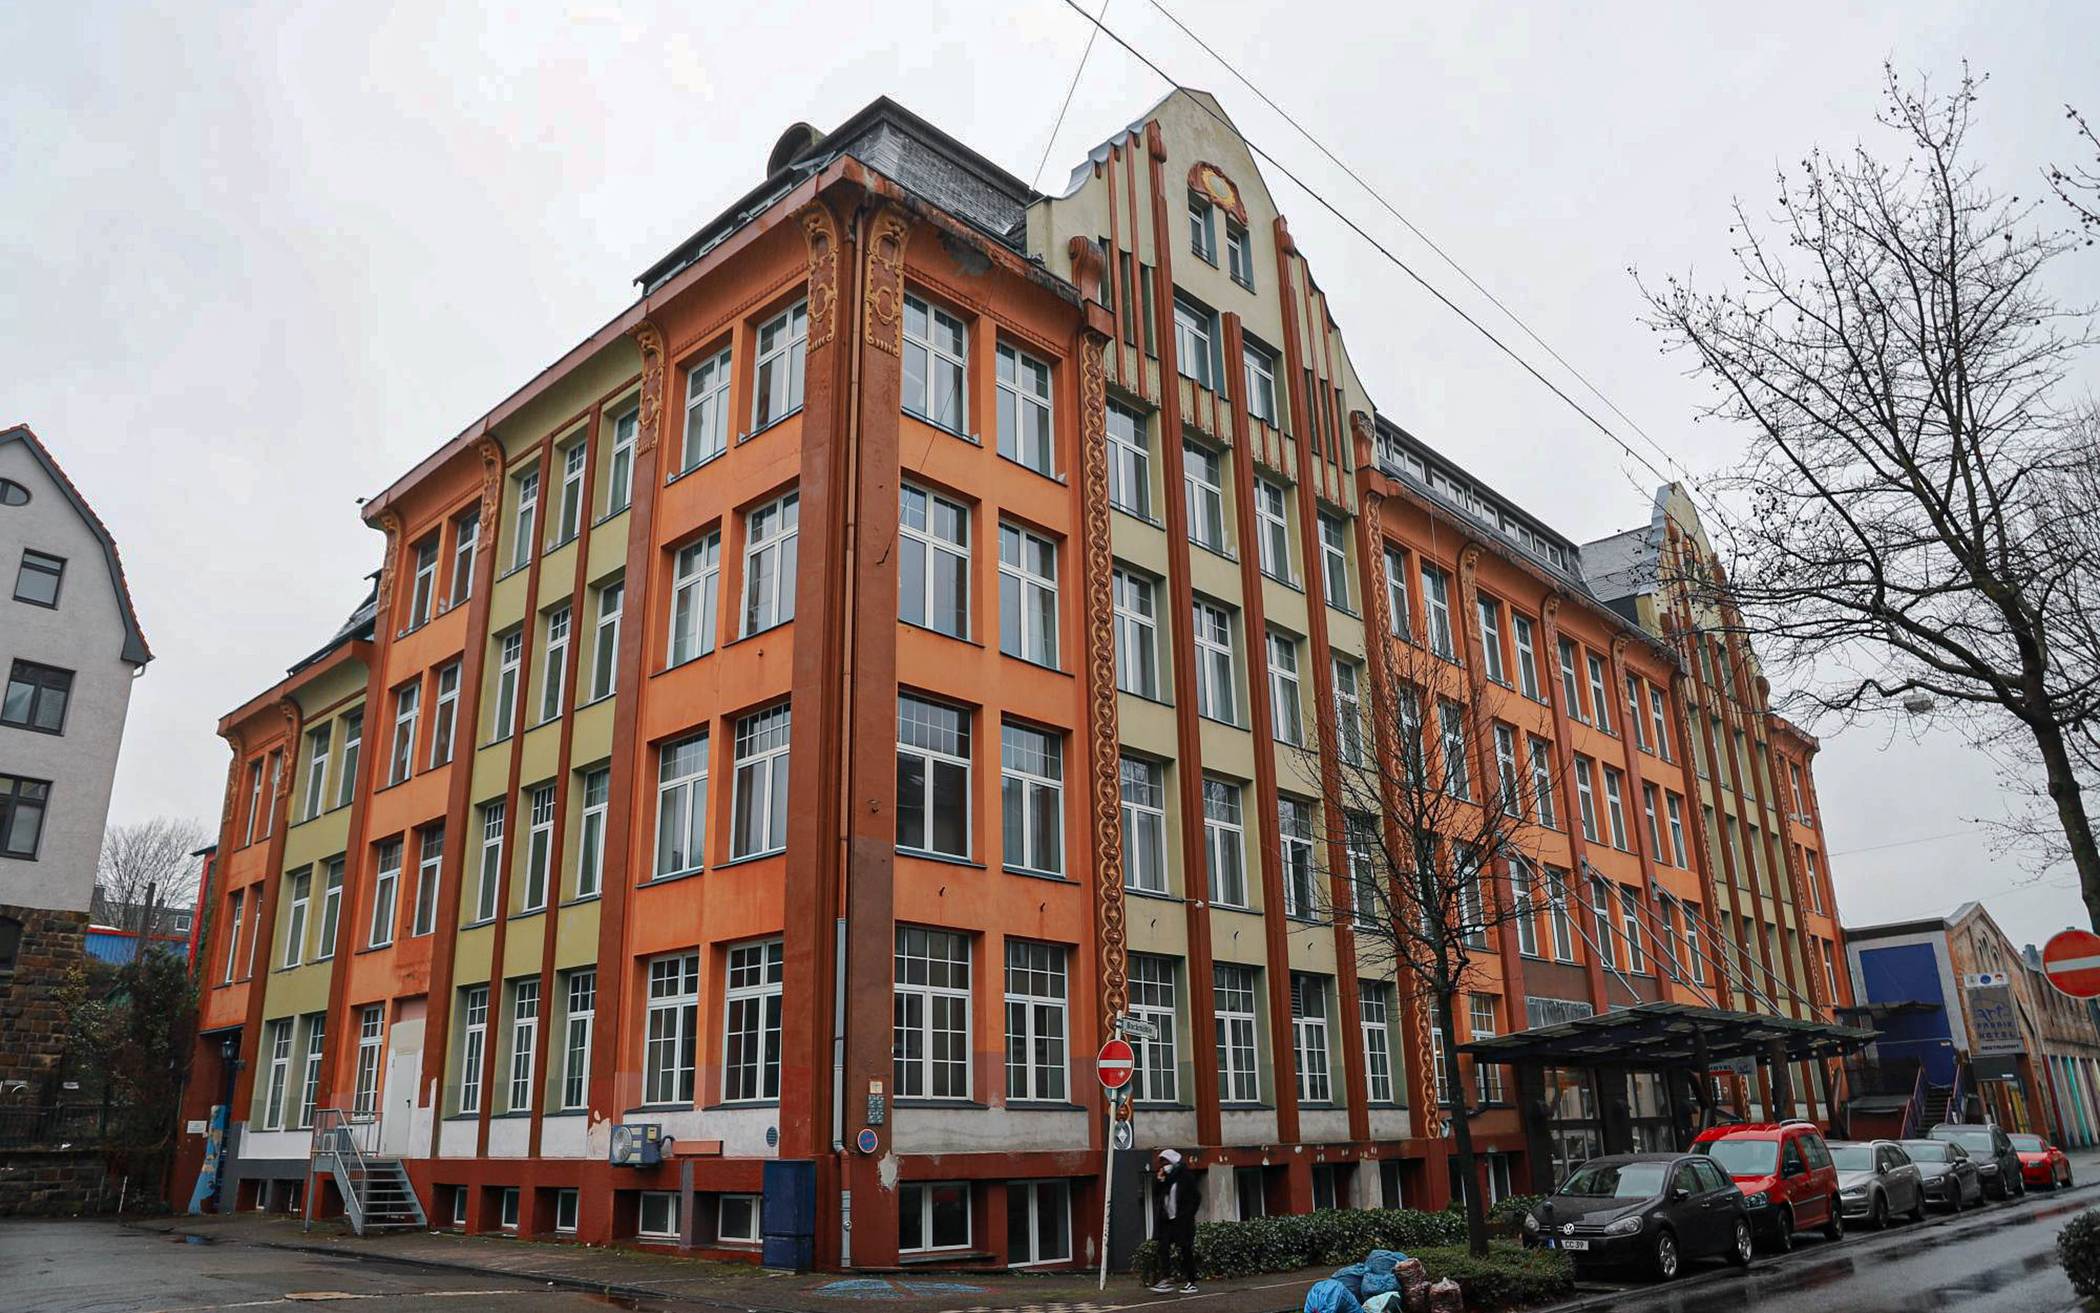  Das frühere „Art Hotel“ in Heckinghausen soll nun endgültig die Heimat für Wuppertals 7. Gesamtschule werden. Abschließend zustimmen muss der Rat in seiner Sitzung am 1. März 2021. 